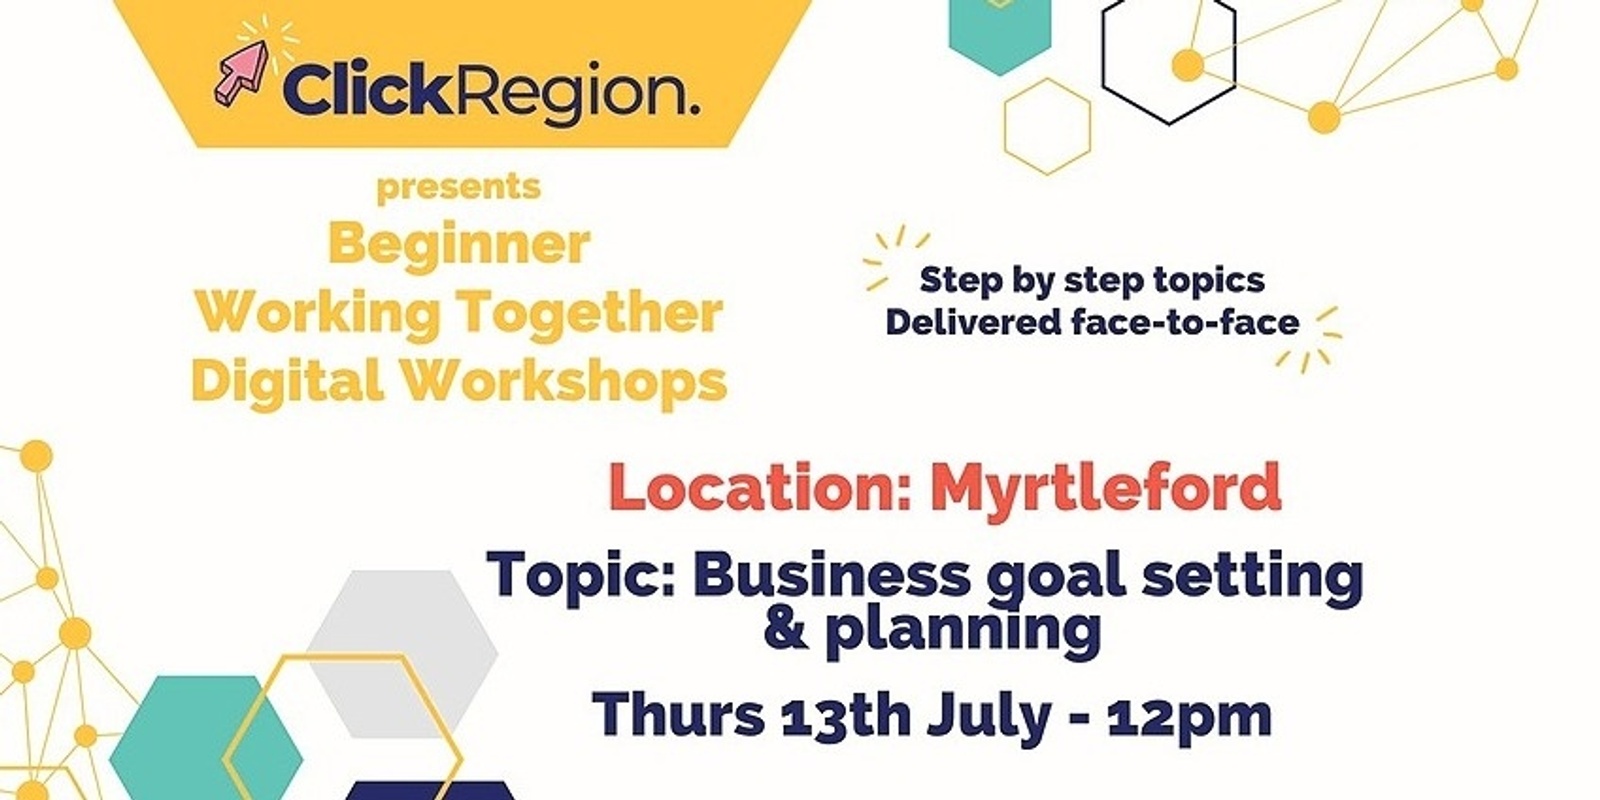 Myrtleford Workshop, Business goal setting & planning - Working Together Program